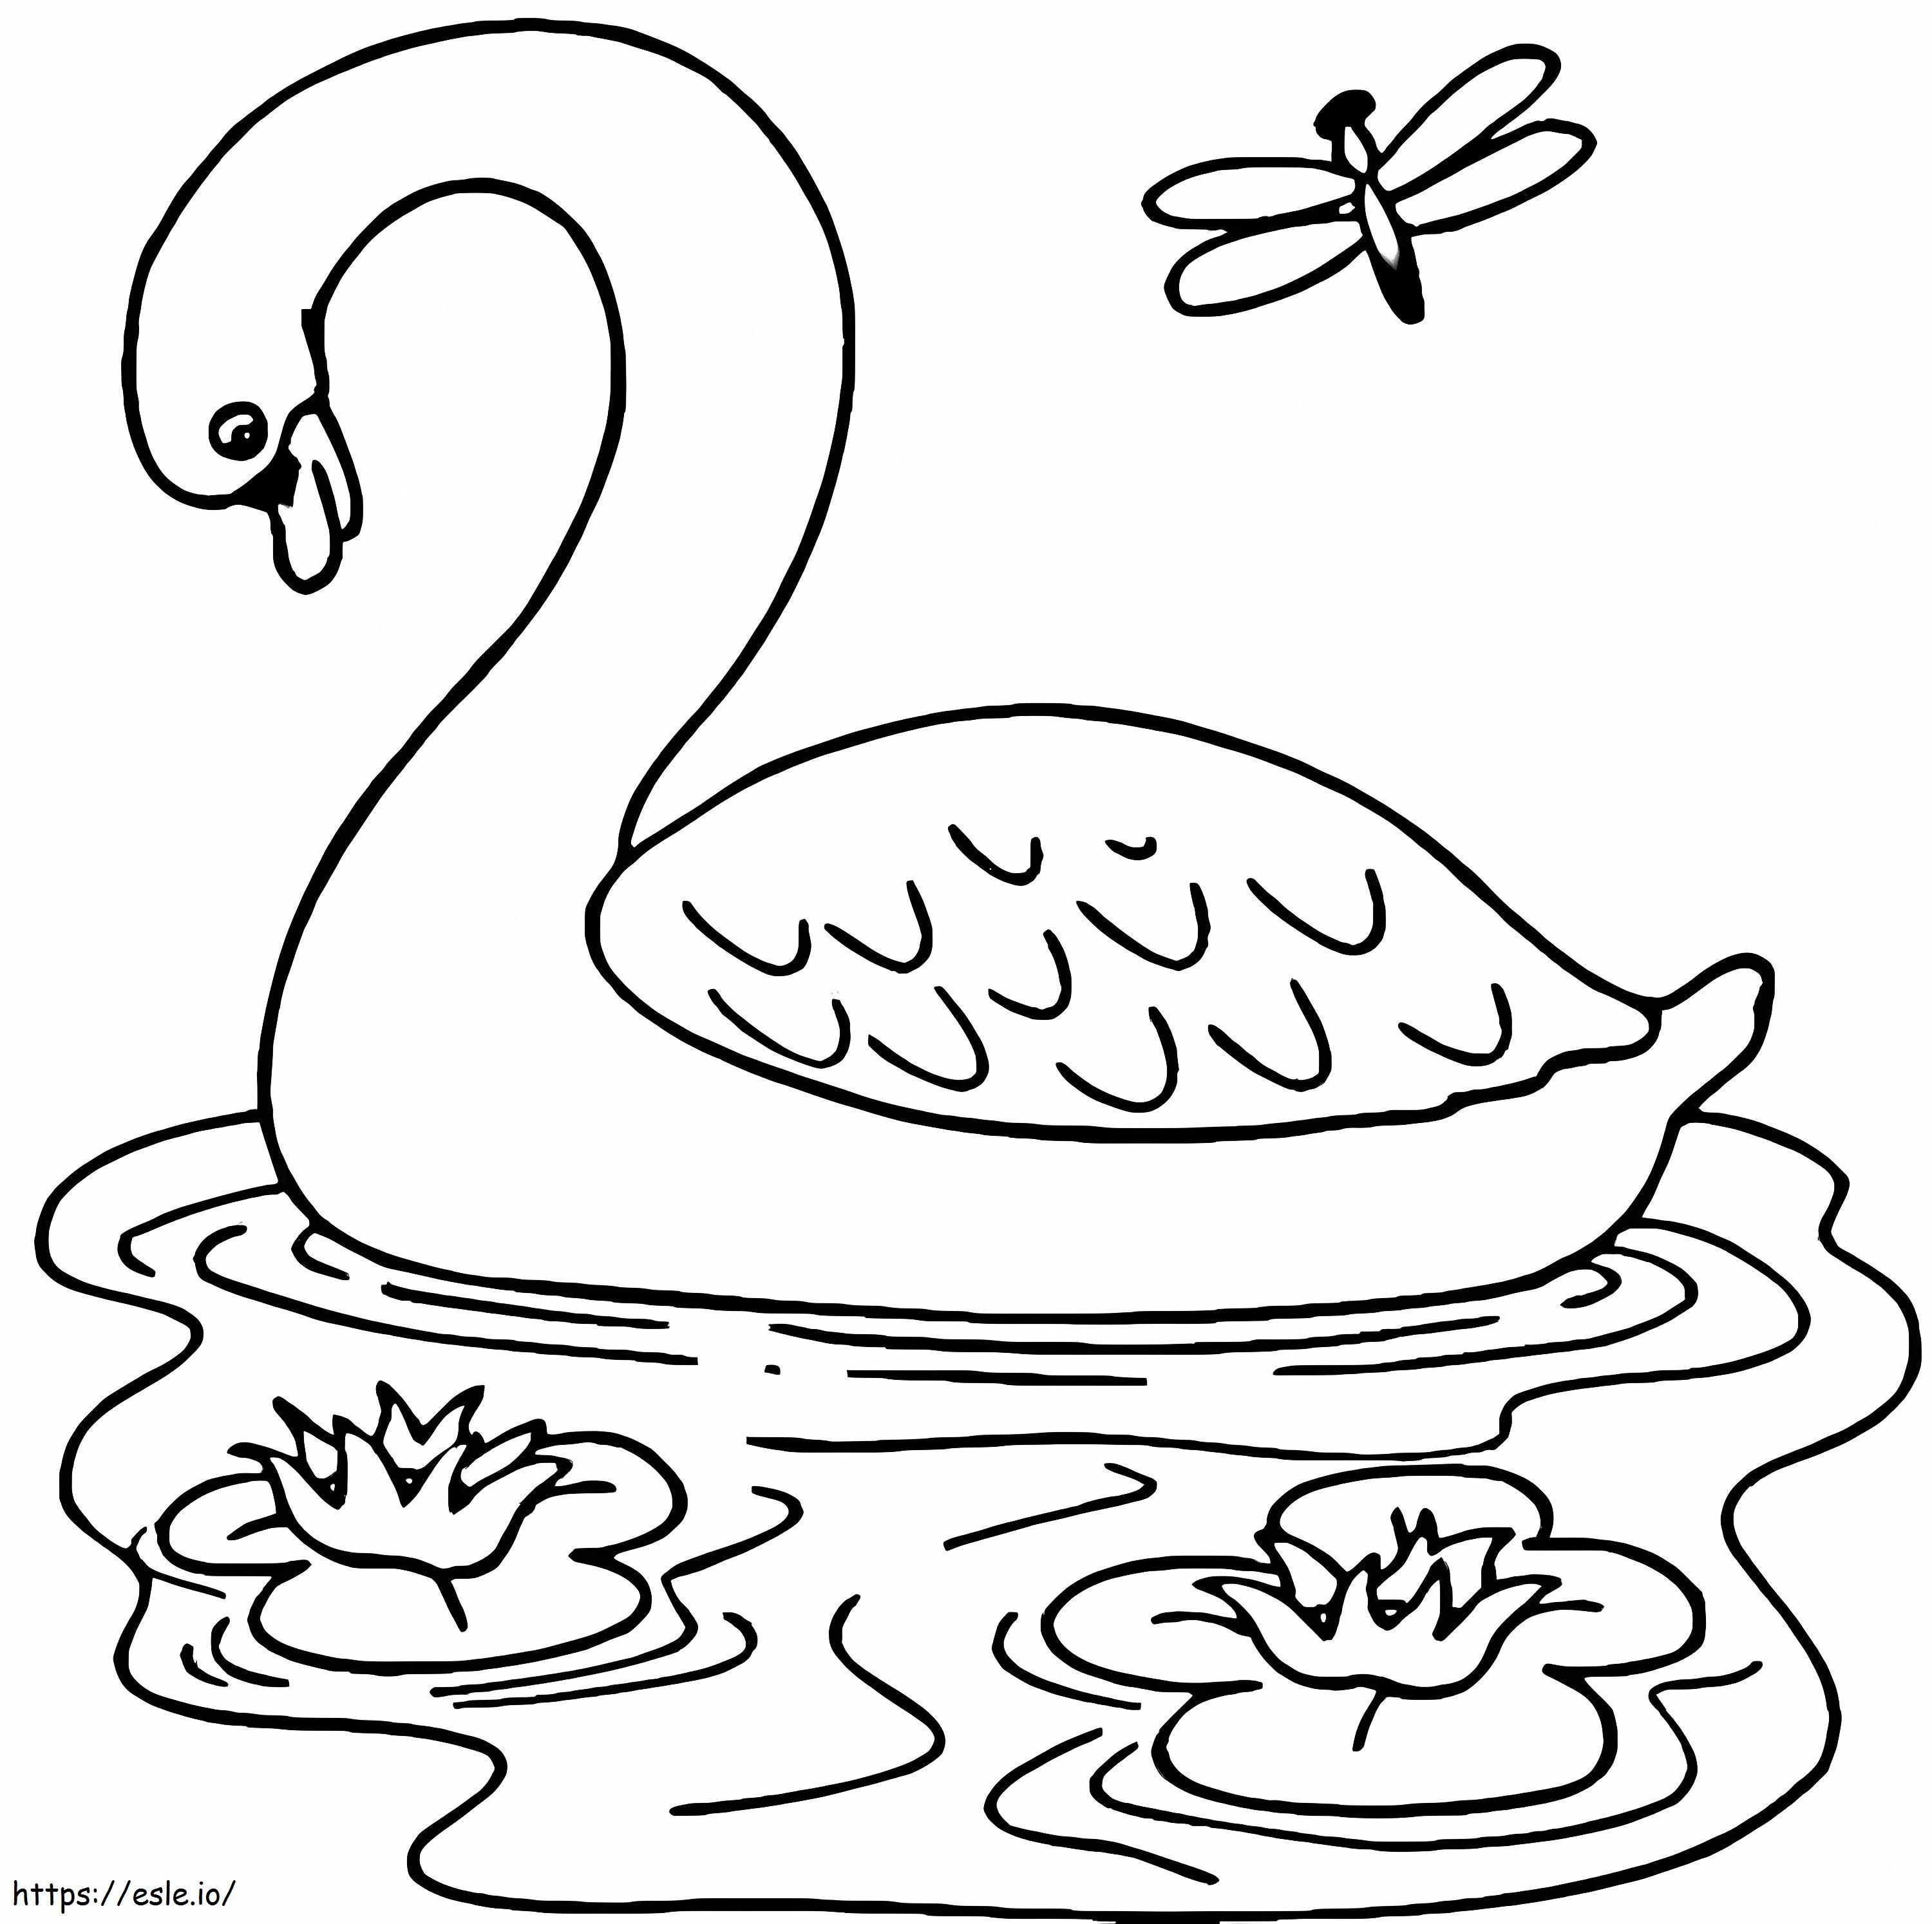 Cisne nadador 2 para colorear